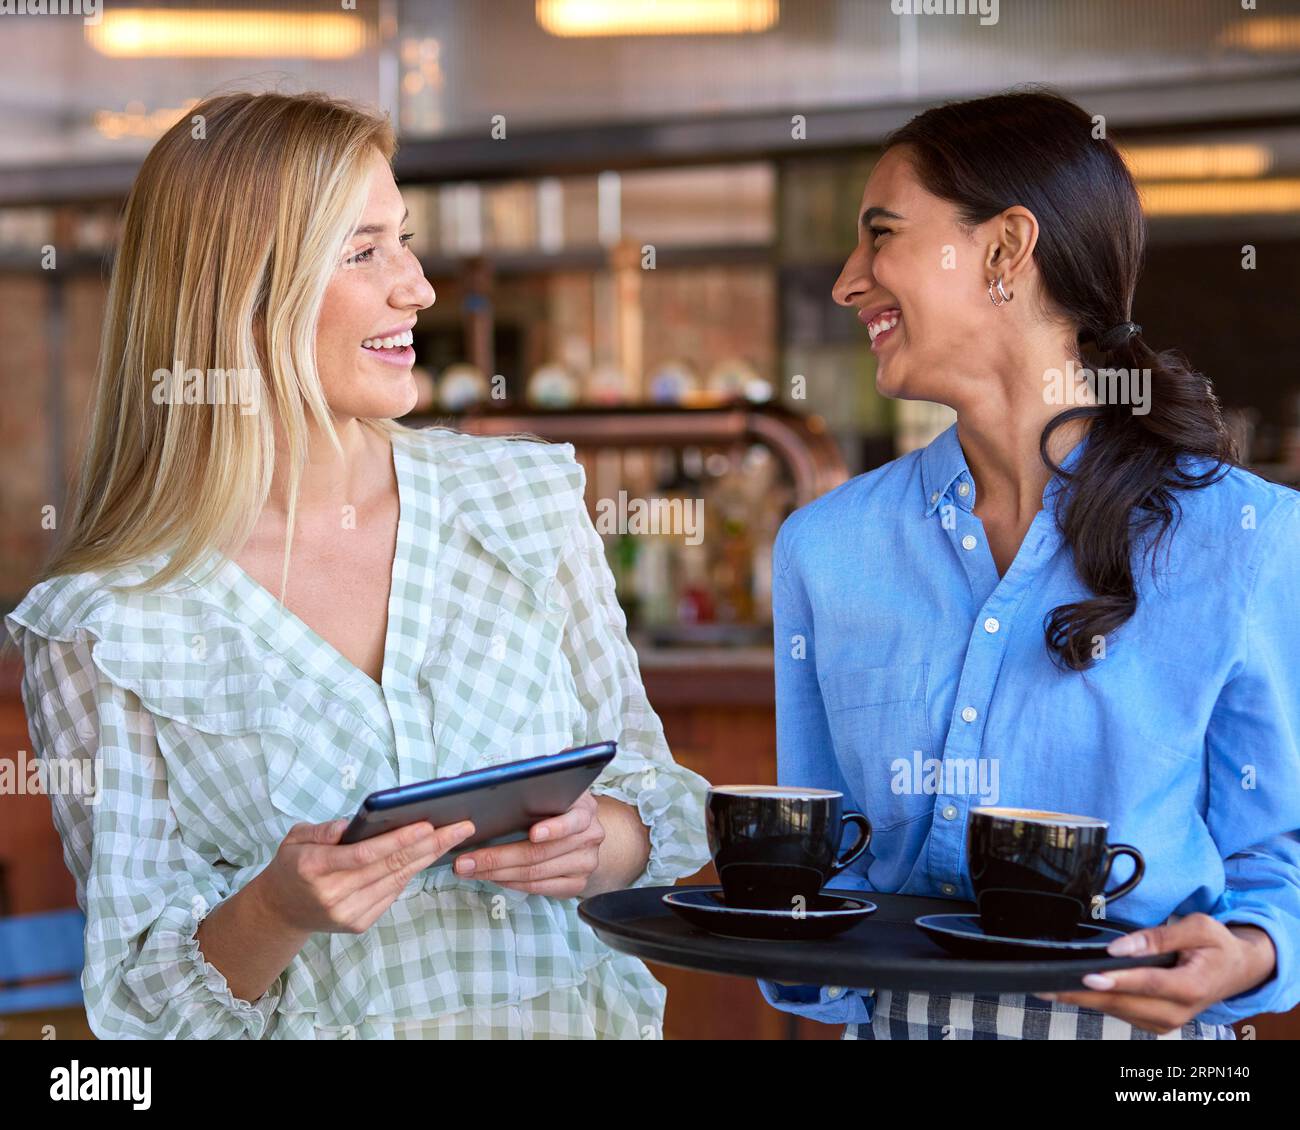 Femme Manager avec tablette numérique et serveuse travaillant dans un restaurant ou un café Banque D'Images